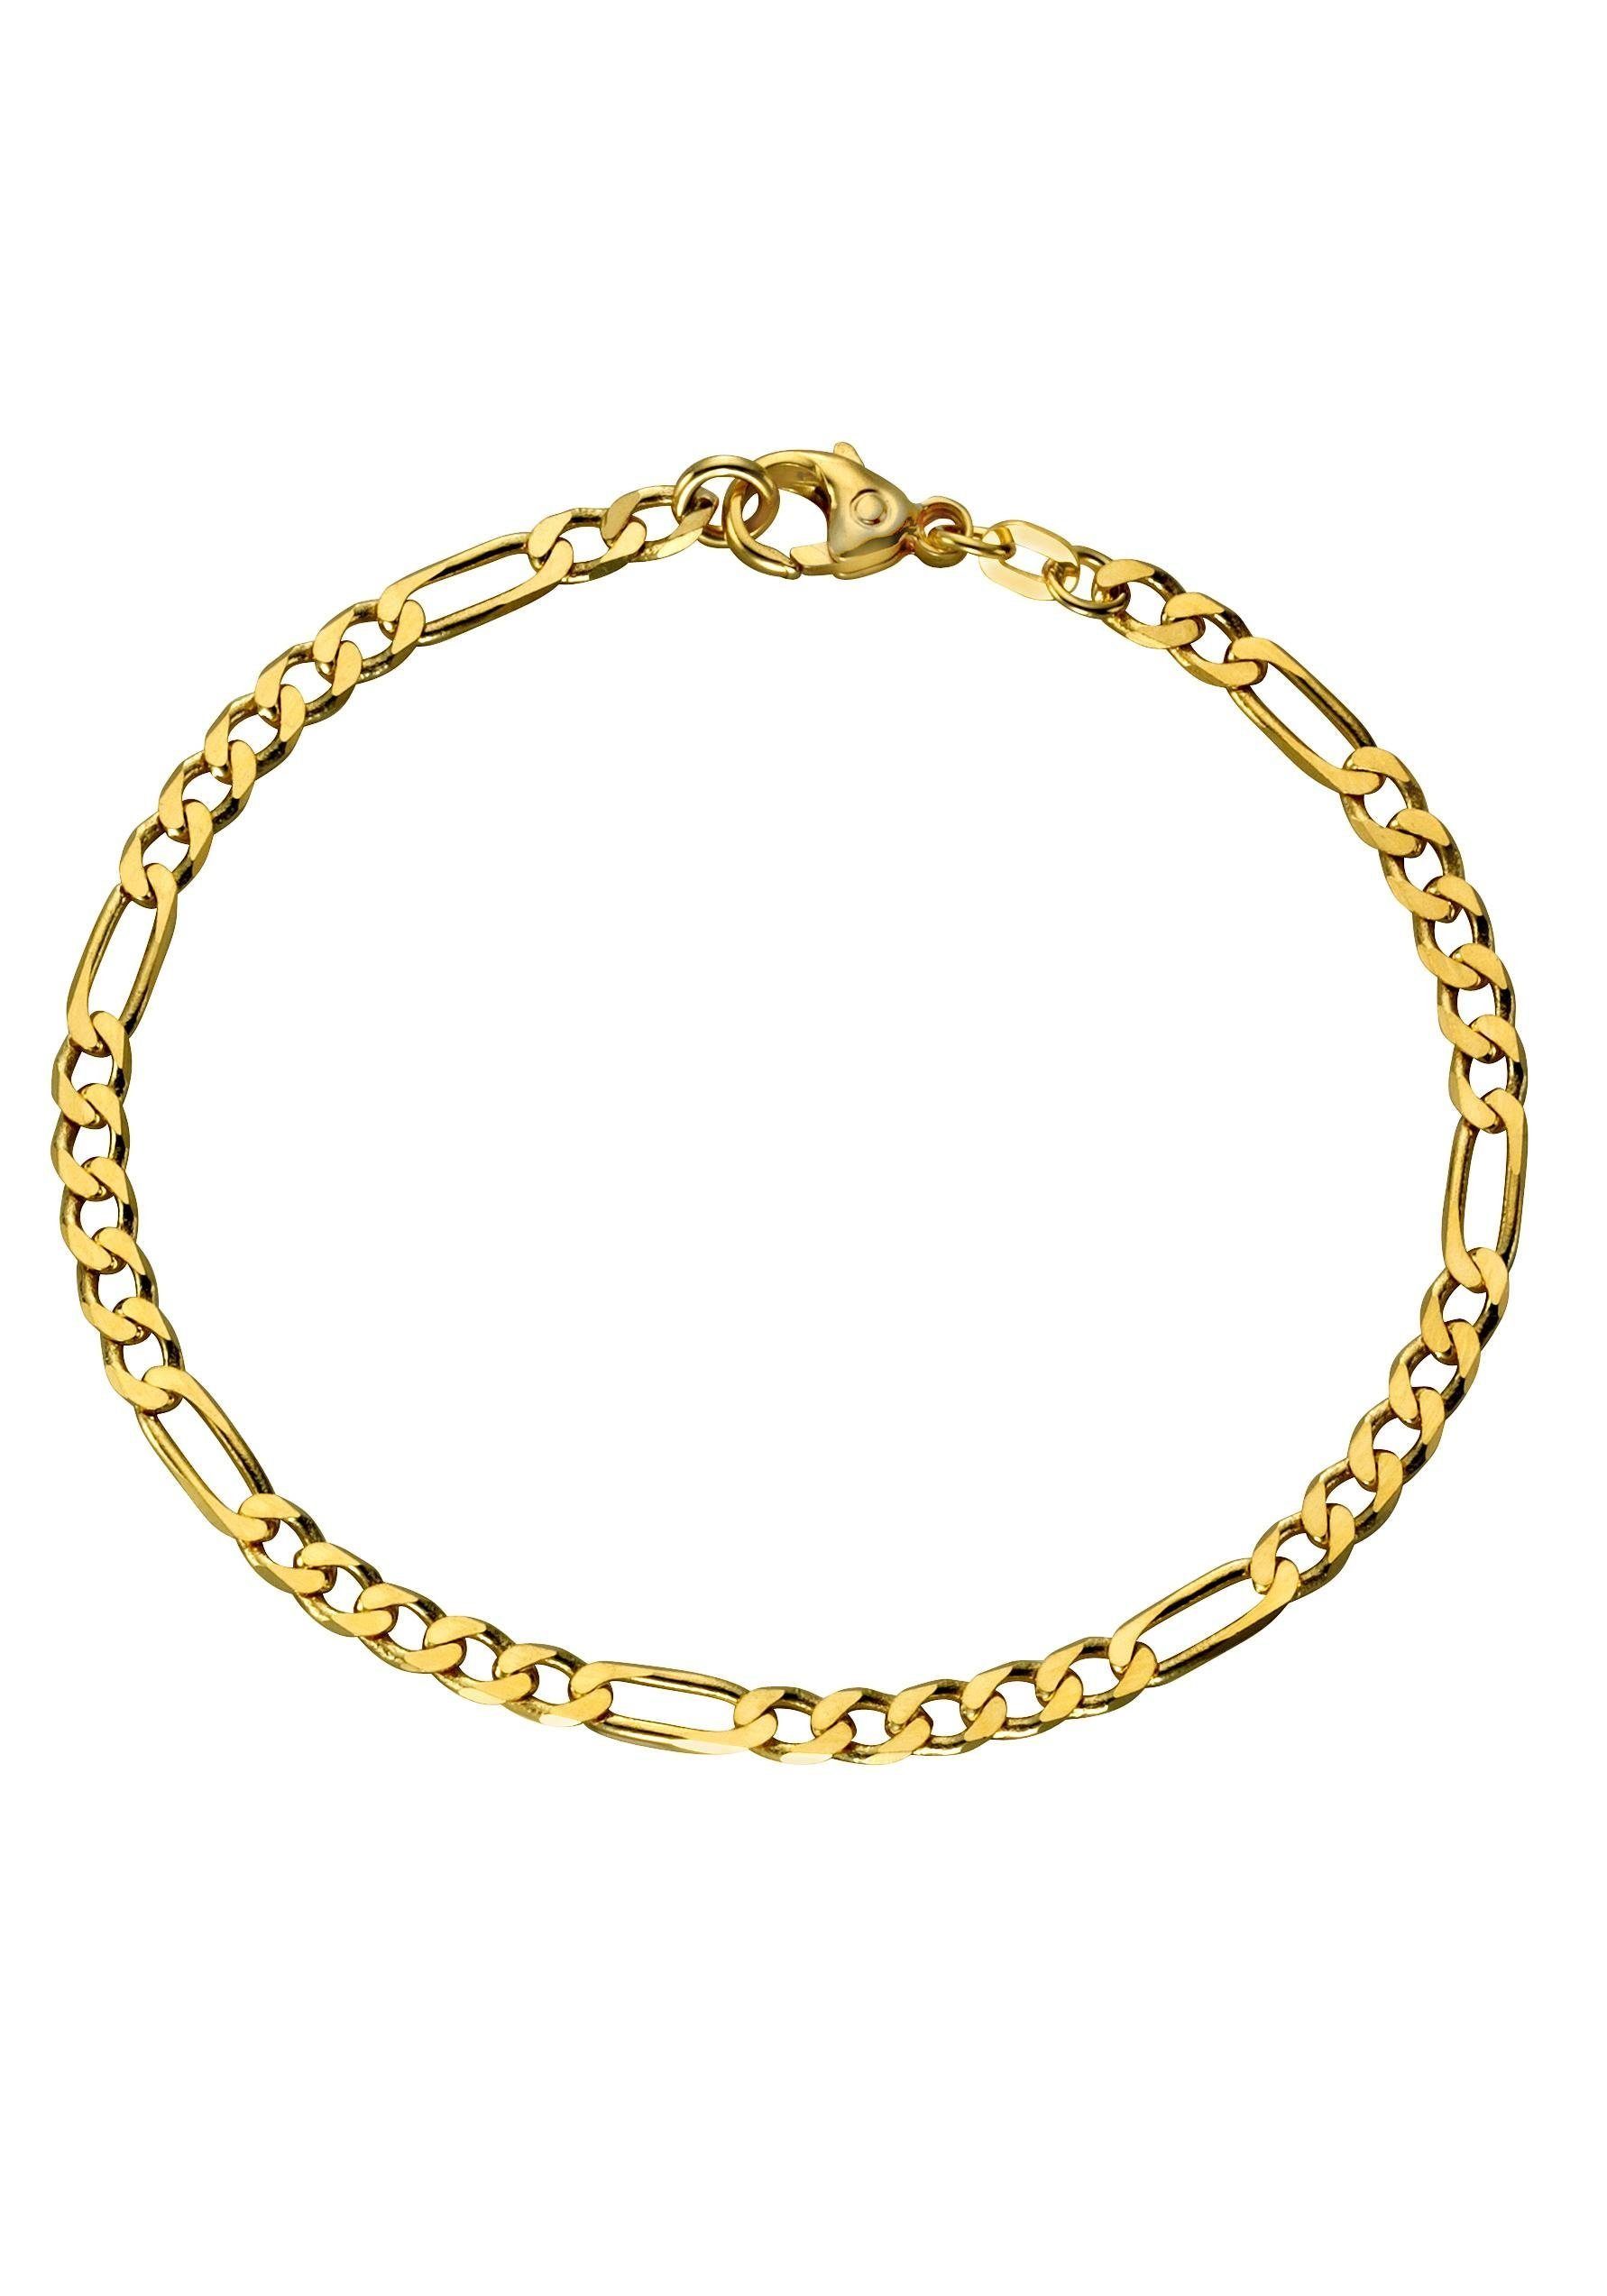 Firetti Goldarmband Schmuck Geschenk Gold 333 Figrokettengliederung, 3,4 mm, zu Kleid, Shirt, Jeans, Sneaker! Anlass Geburtstag Weihnachten